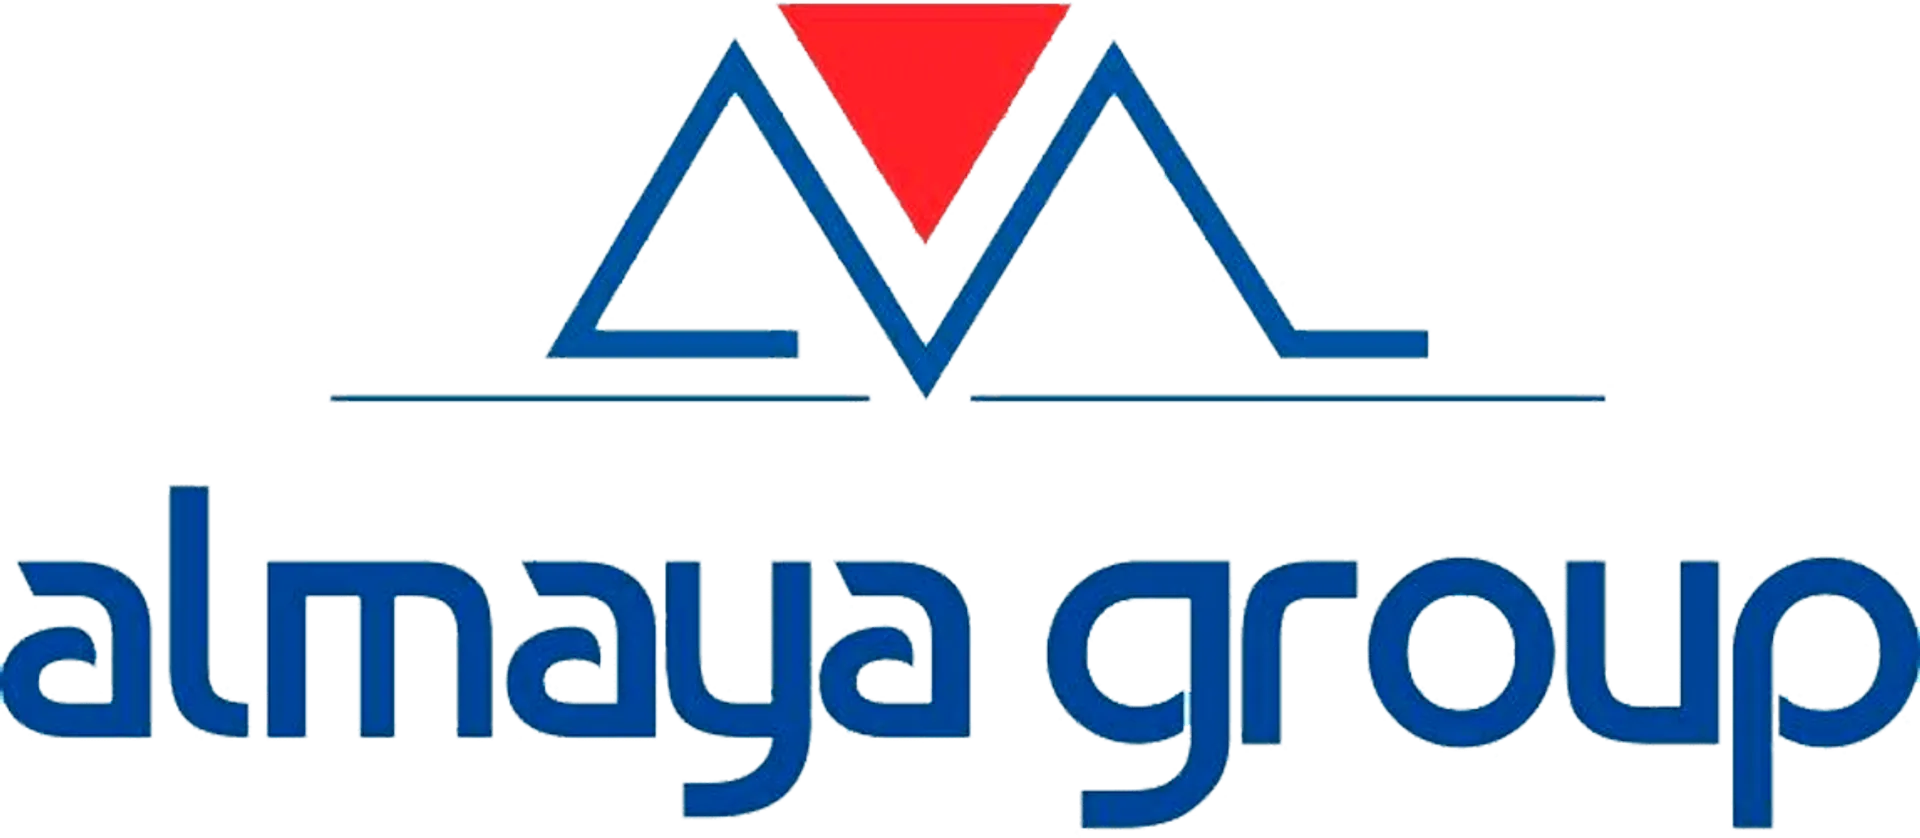 ALMAYA SUPERMARKET logo. Current weekly ad